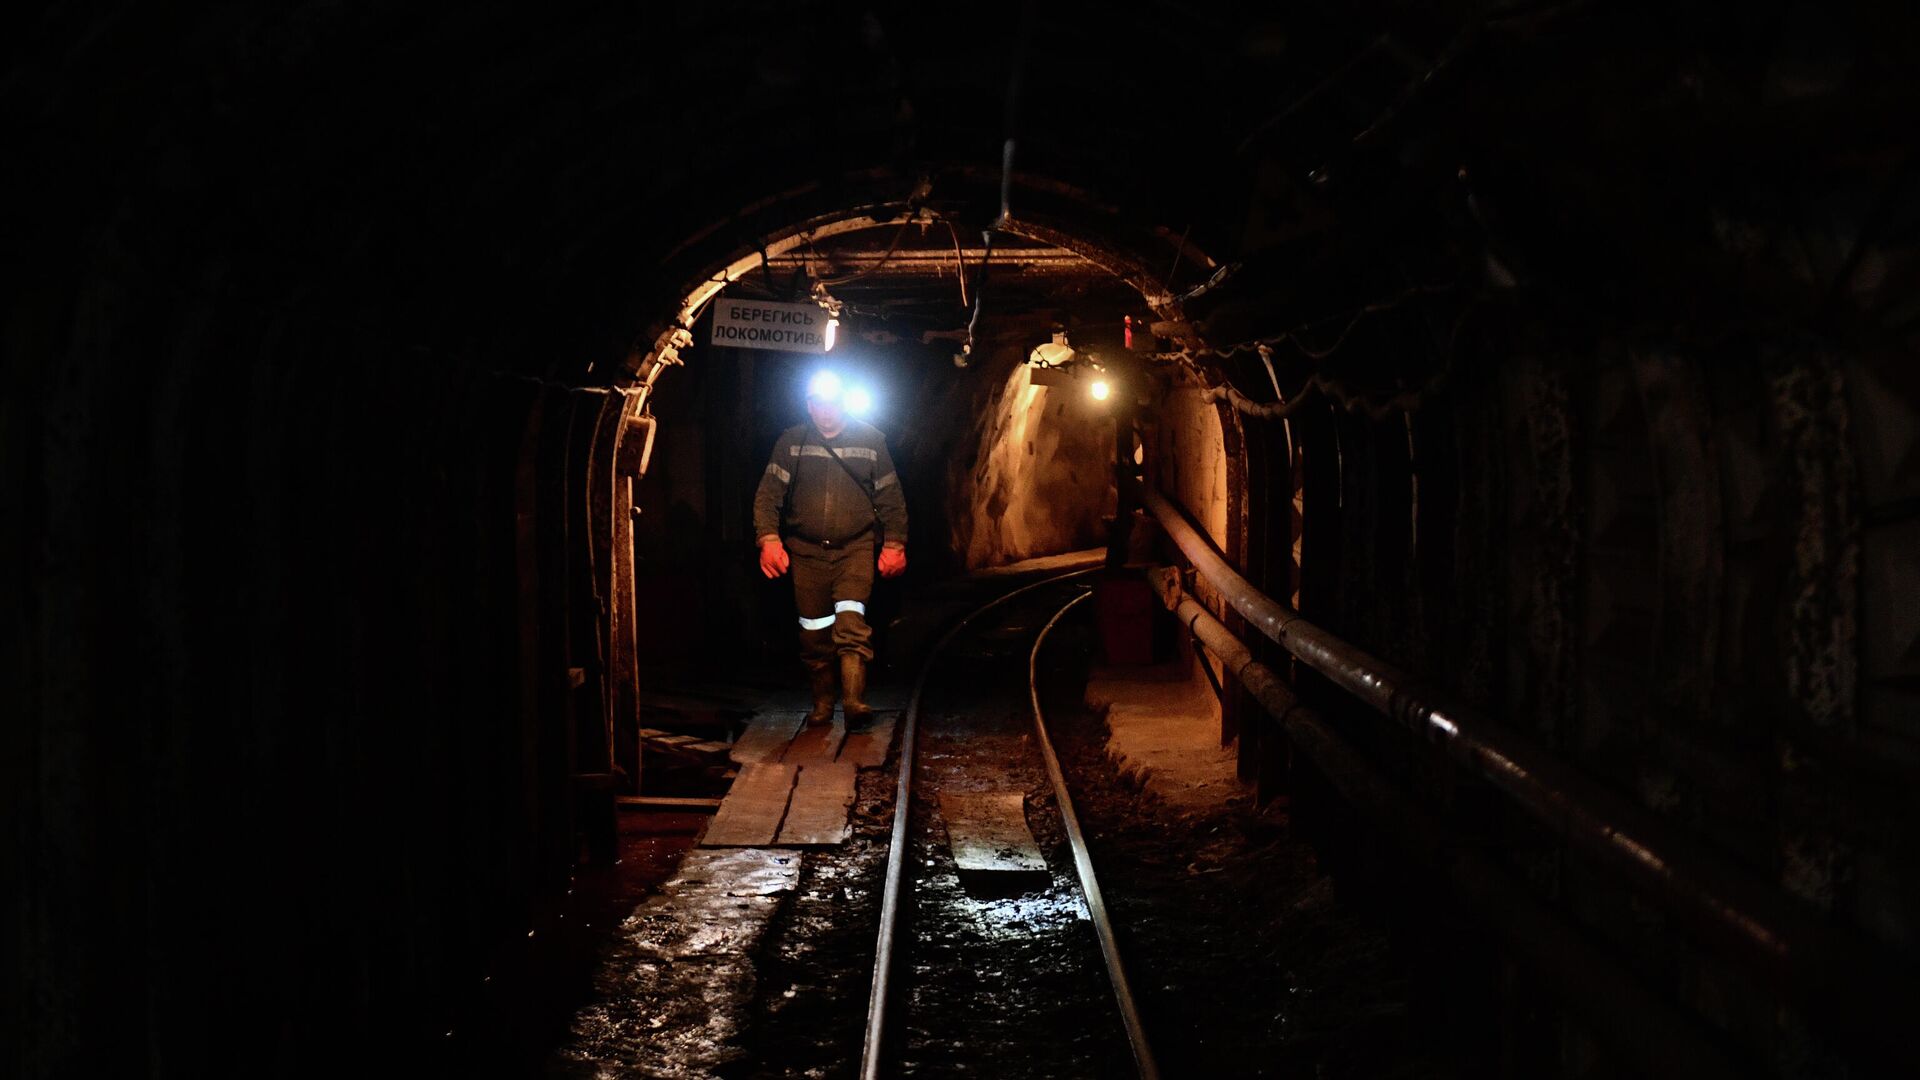 В России создают уникальную "нервную систему" для угледобывающих шахт